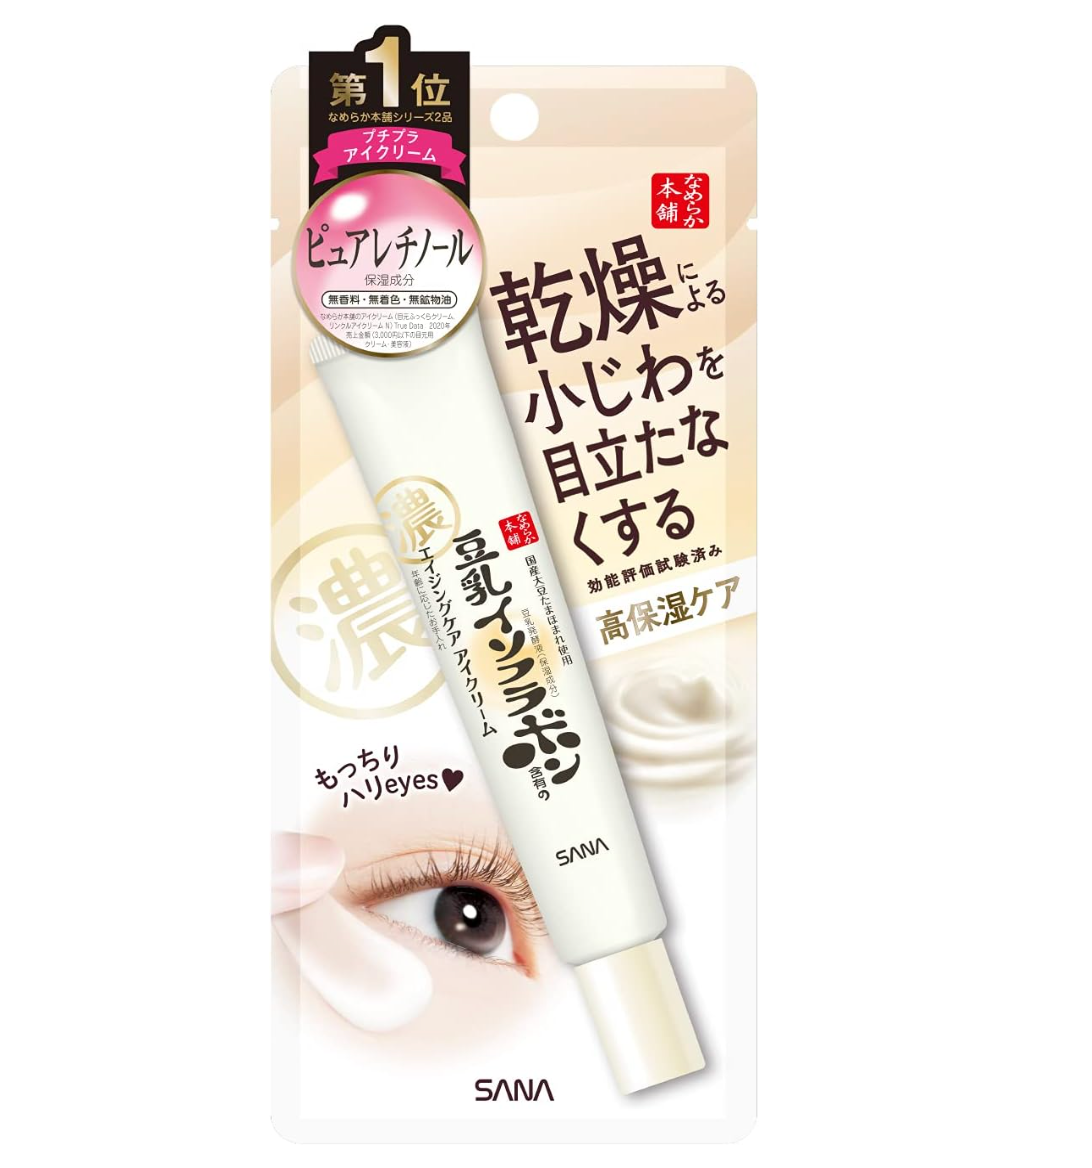 Sana Nameraka Honpo Soy Milk Isoflavone Wrinkle Eye Cream 20g